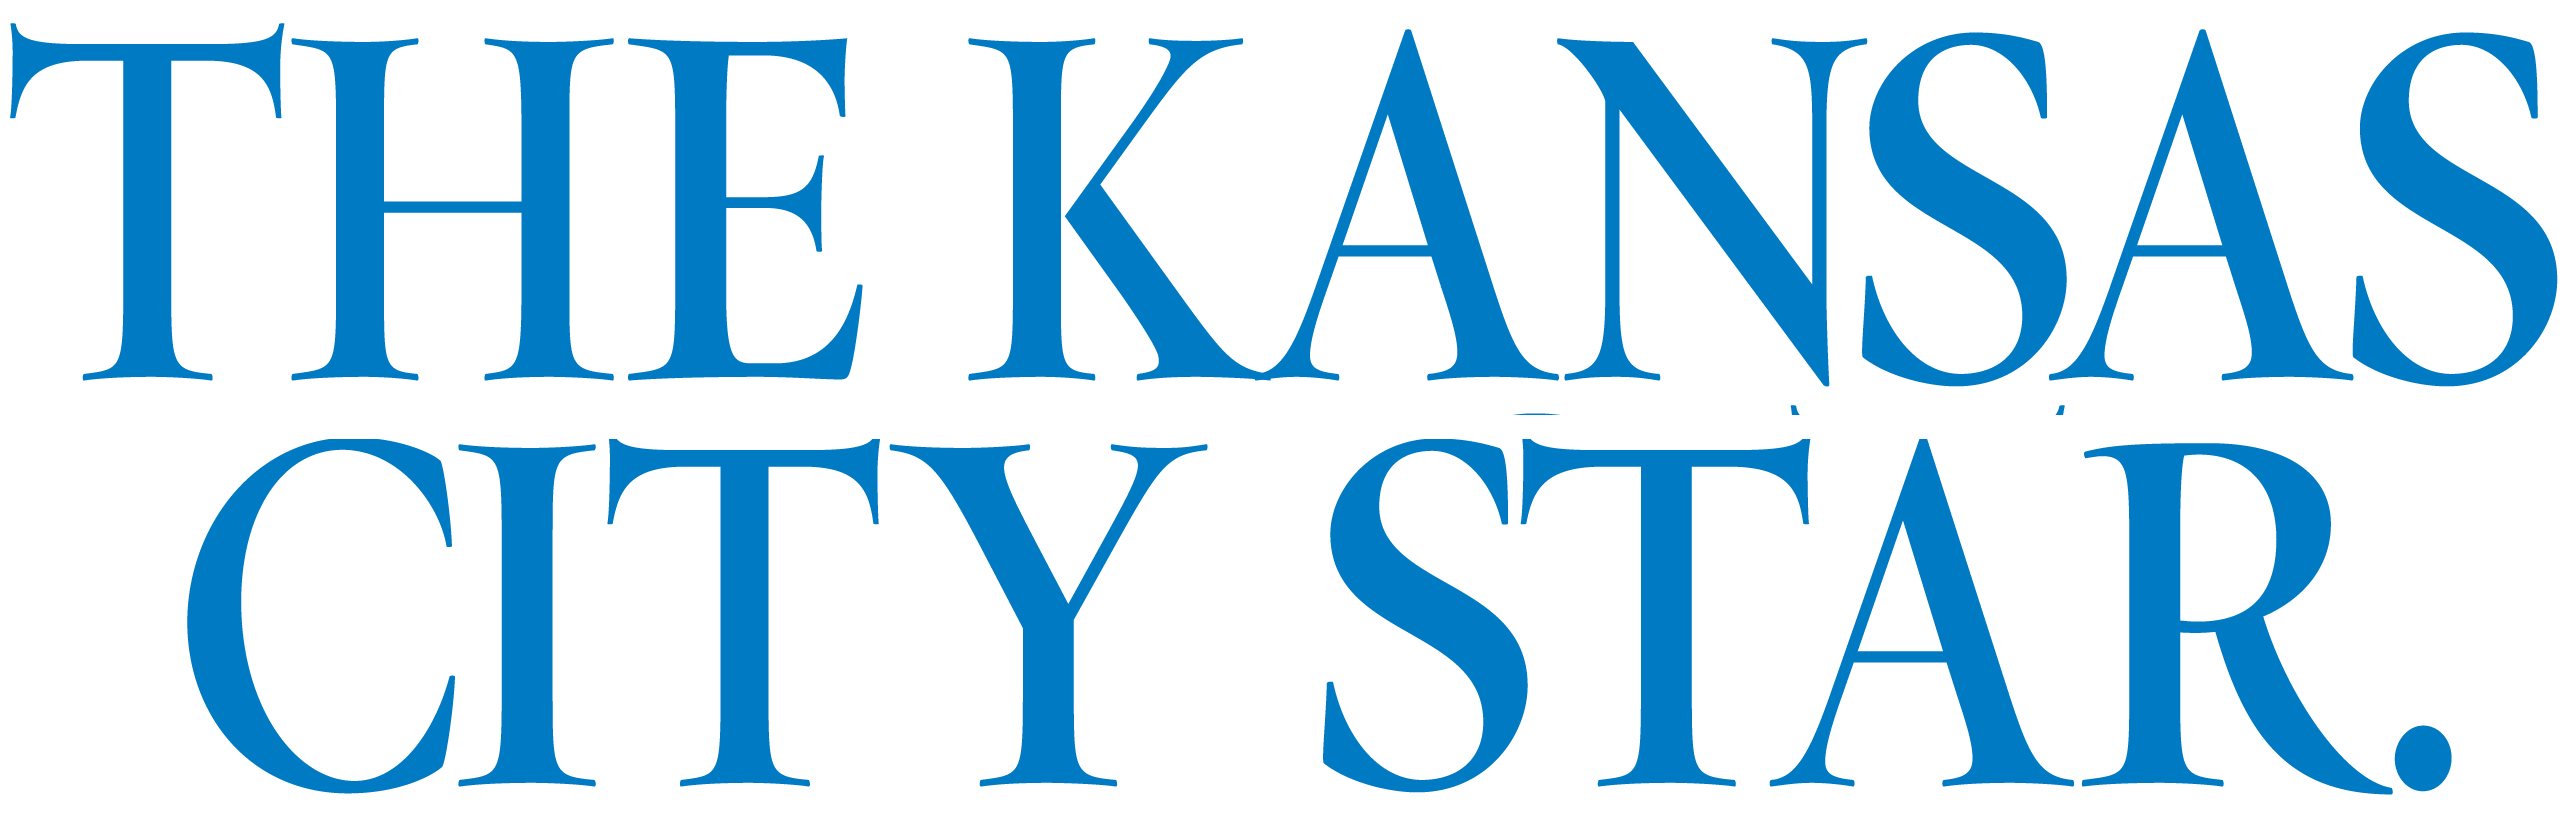 Kansas City Star logo